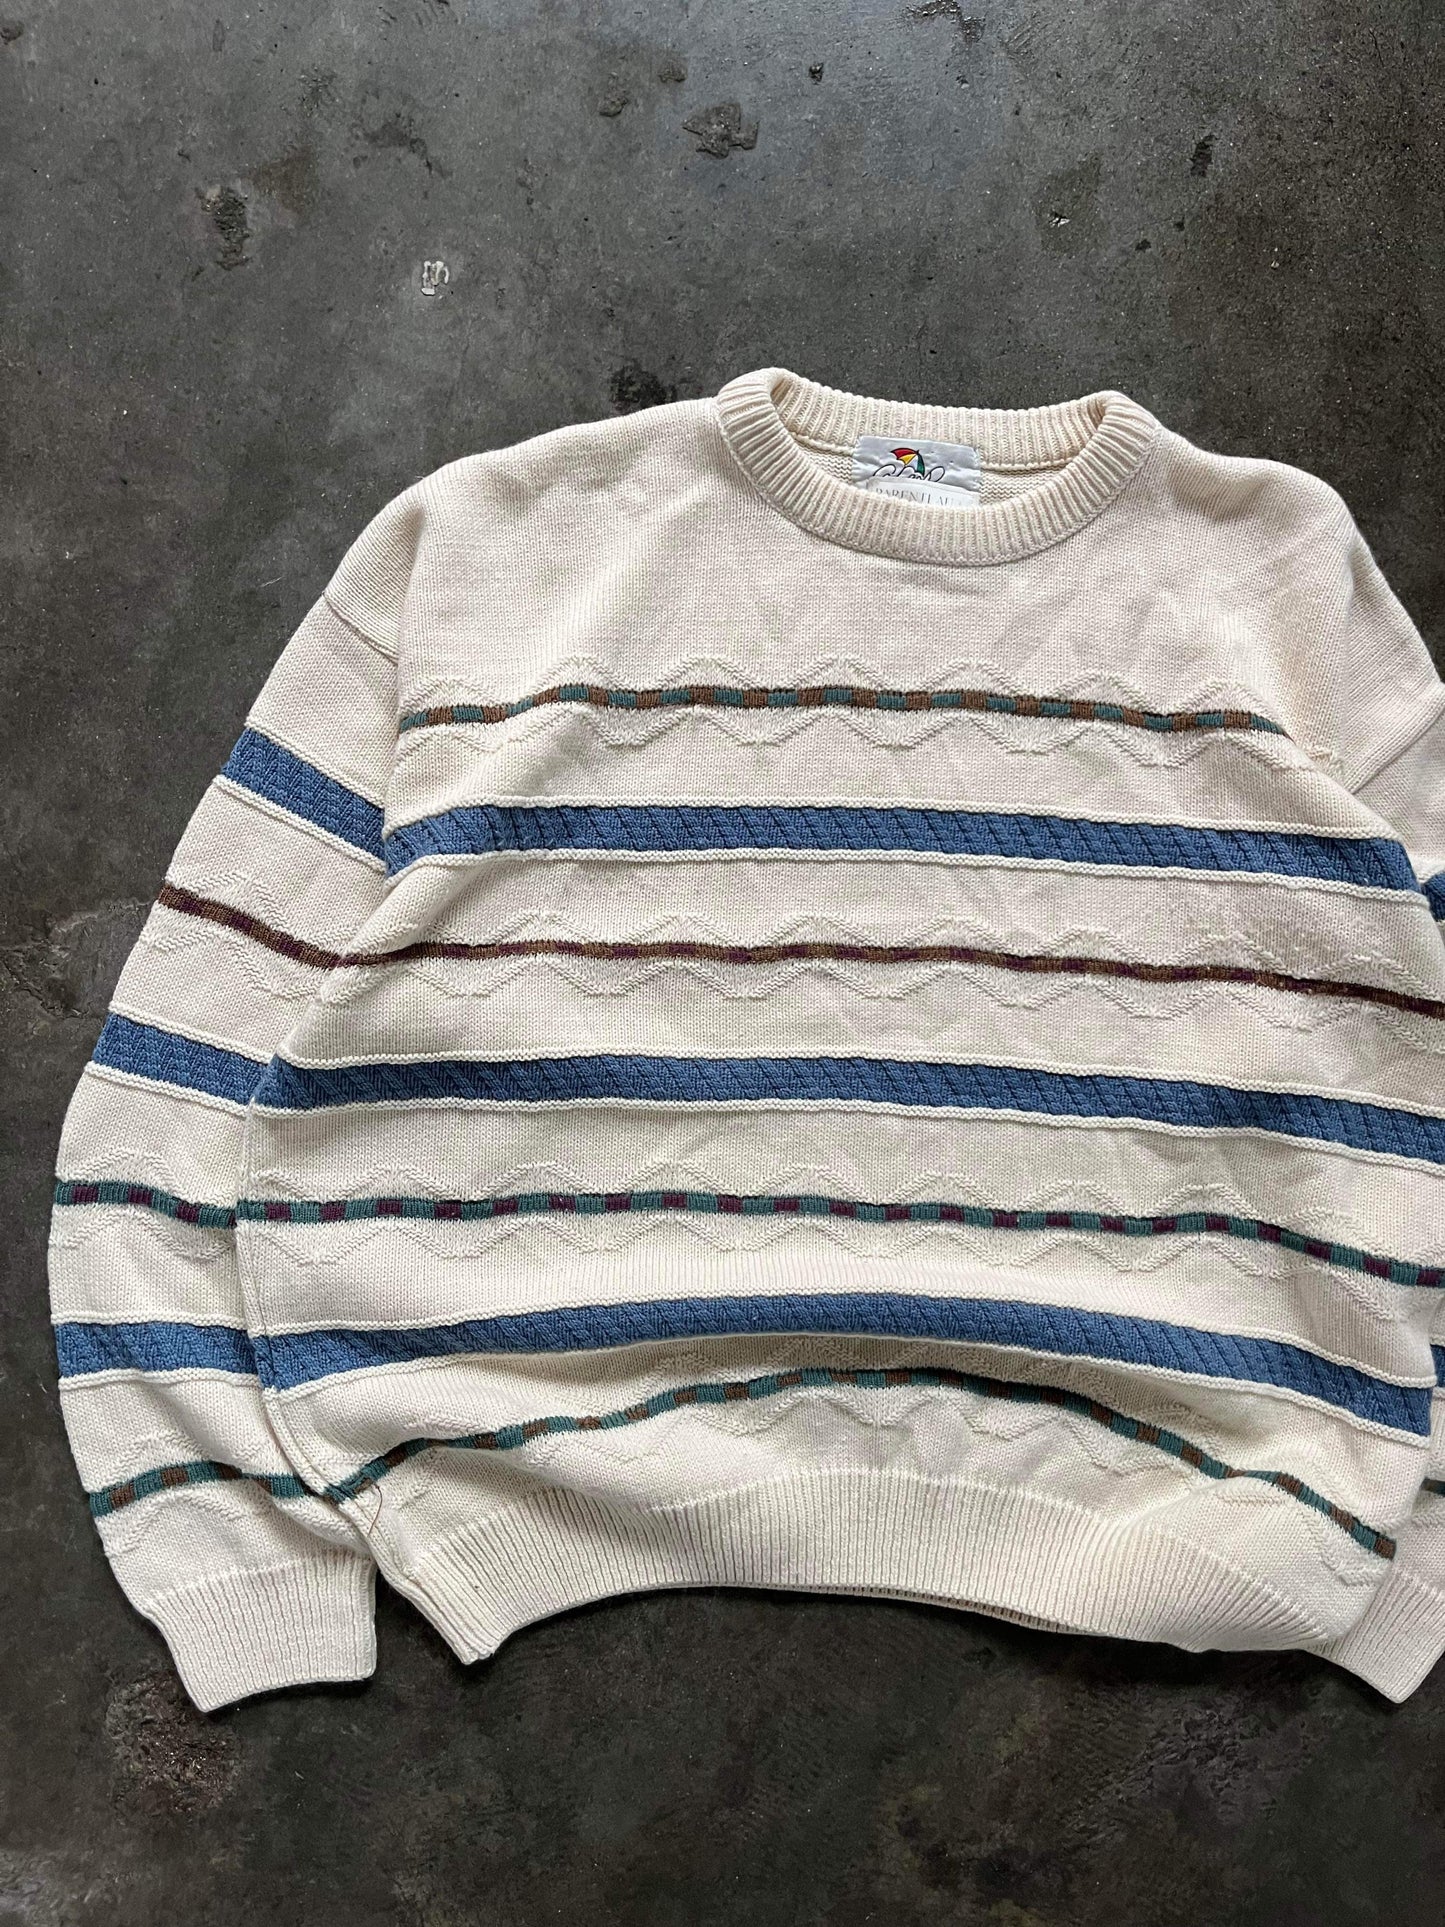 (L) Vintage Texture Knit